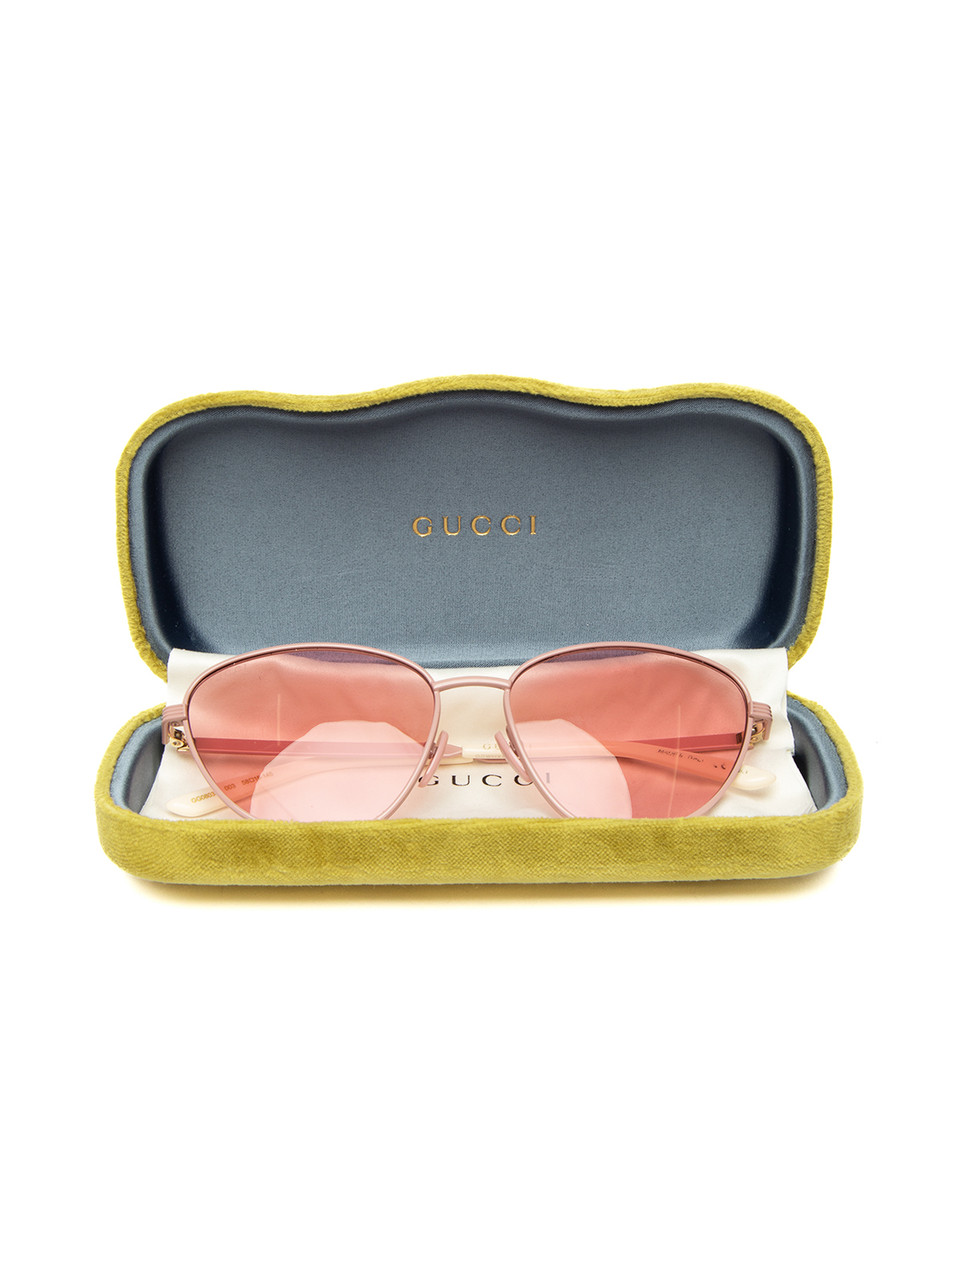 Gucci Thin Pink Cat Eye Sunglasses